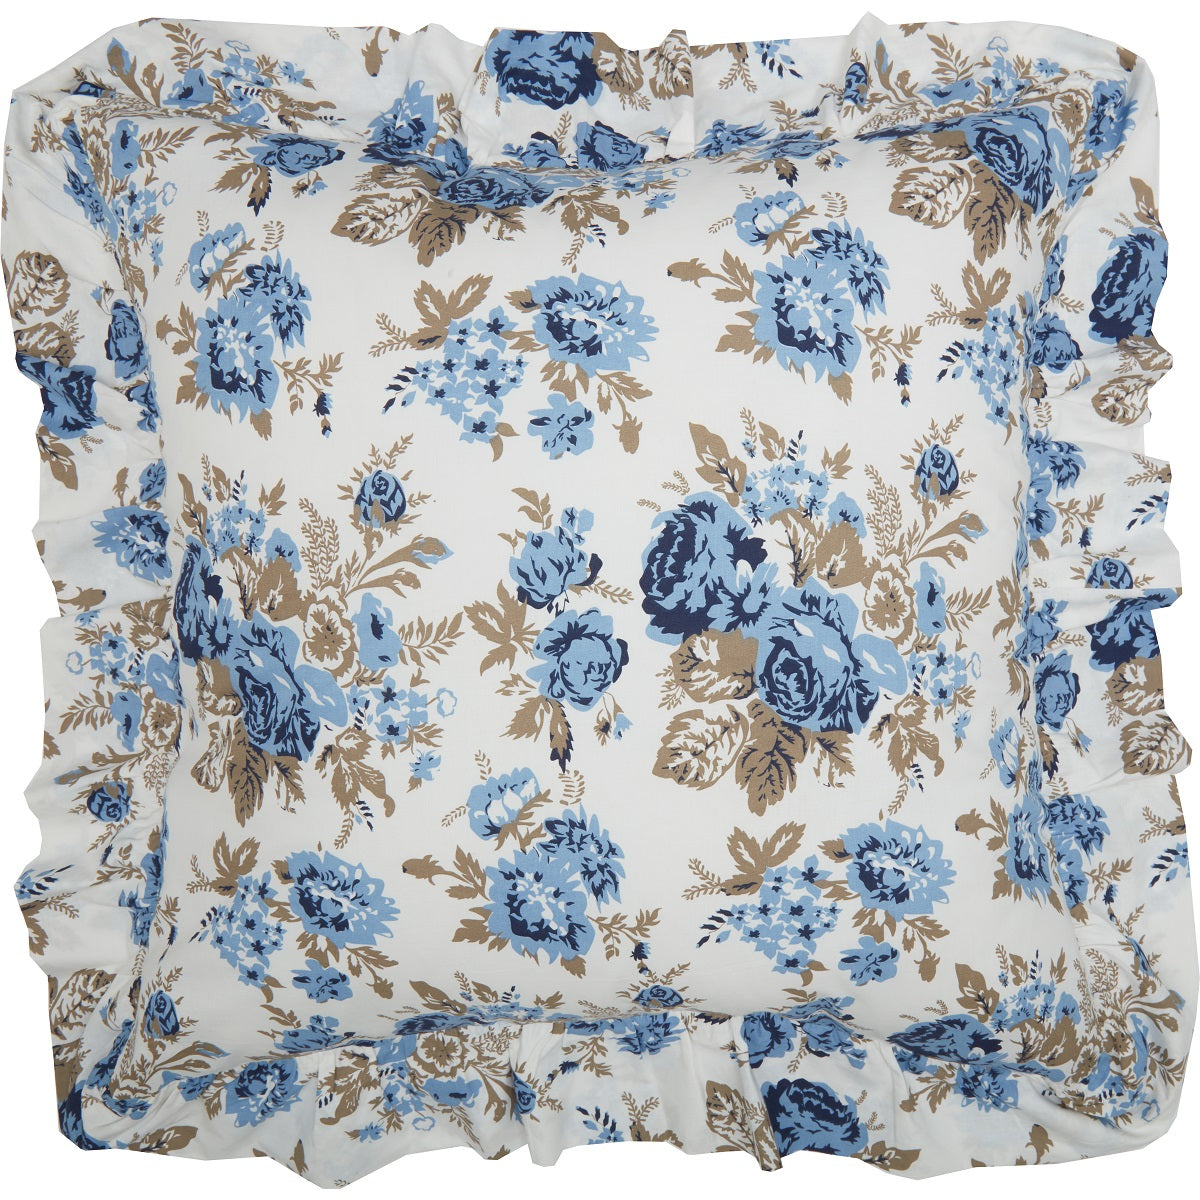 Annie Blue Floral Fabric Euro Sham 26x26 VHC Brands